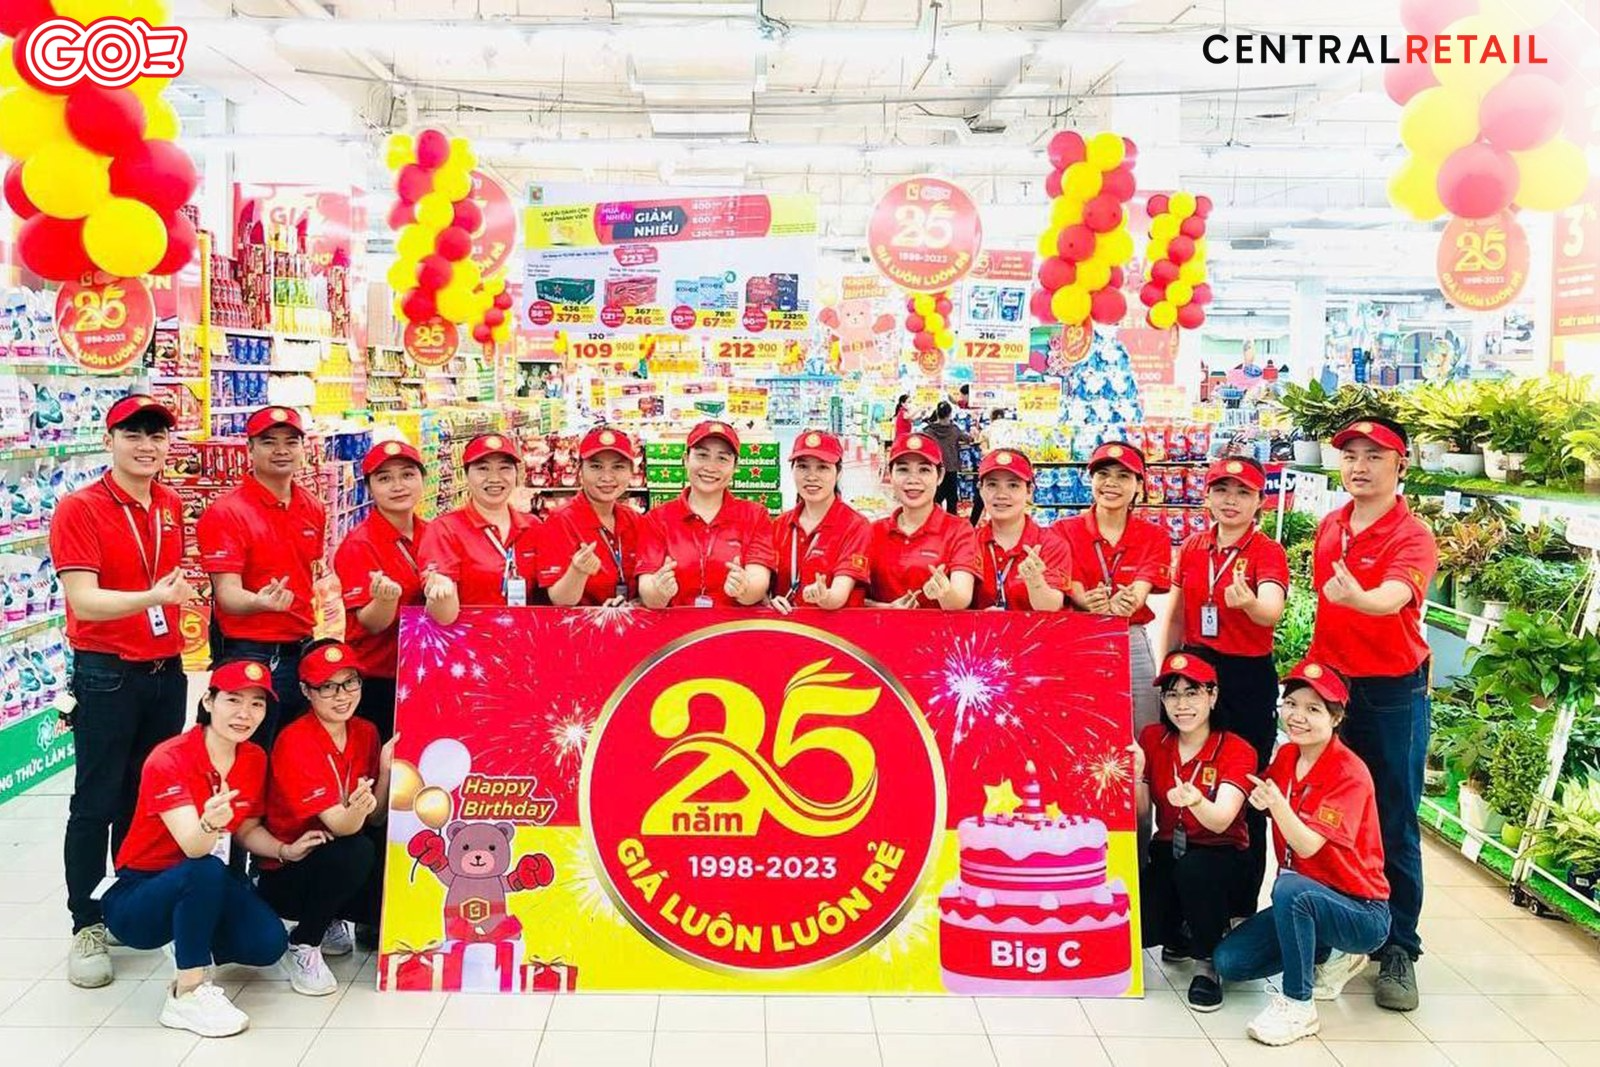 GO! Hypermarket nationwide celebrates its 25th birthday